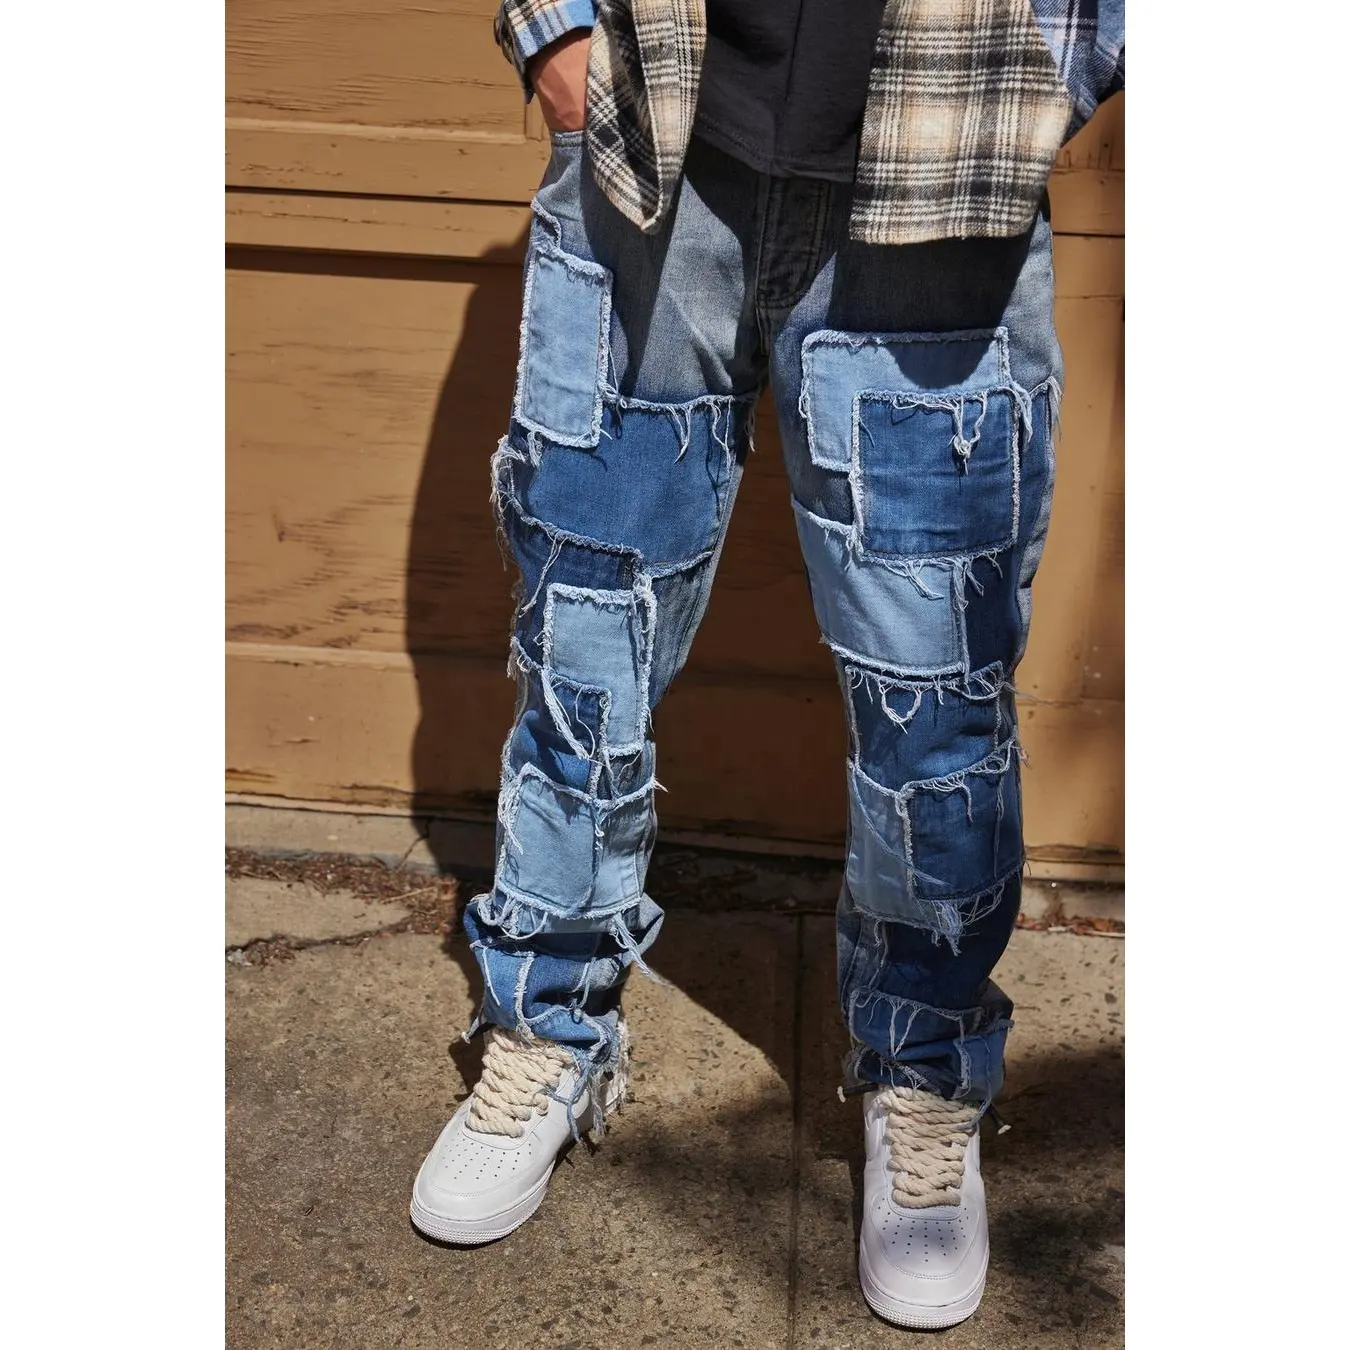 Aeedenim - Calça jeans elástica para homens, roupa de moda nova roxa europeia e americana com letras, calça estilo rua italiana